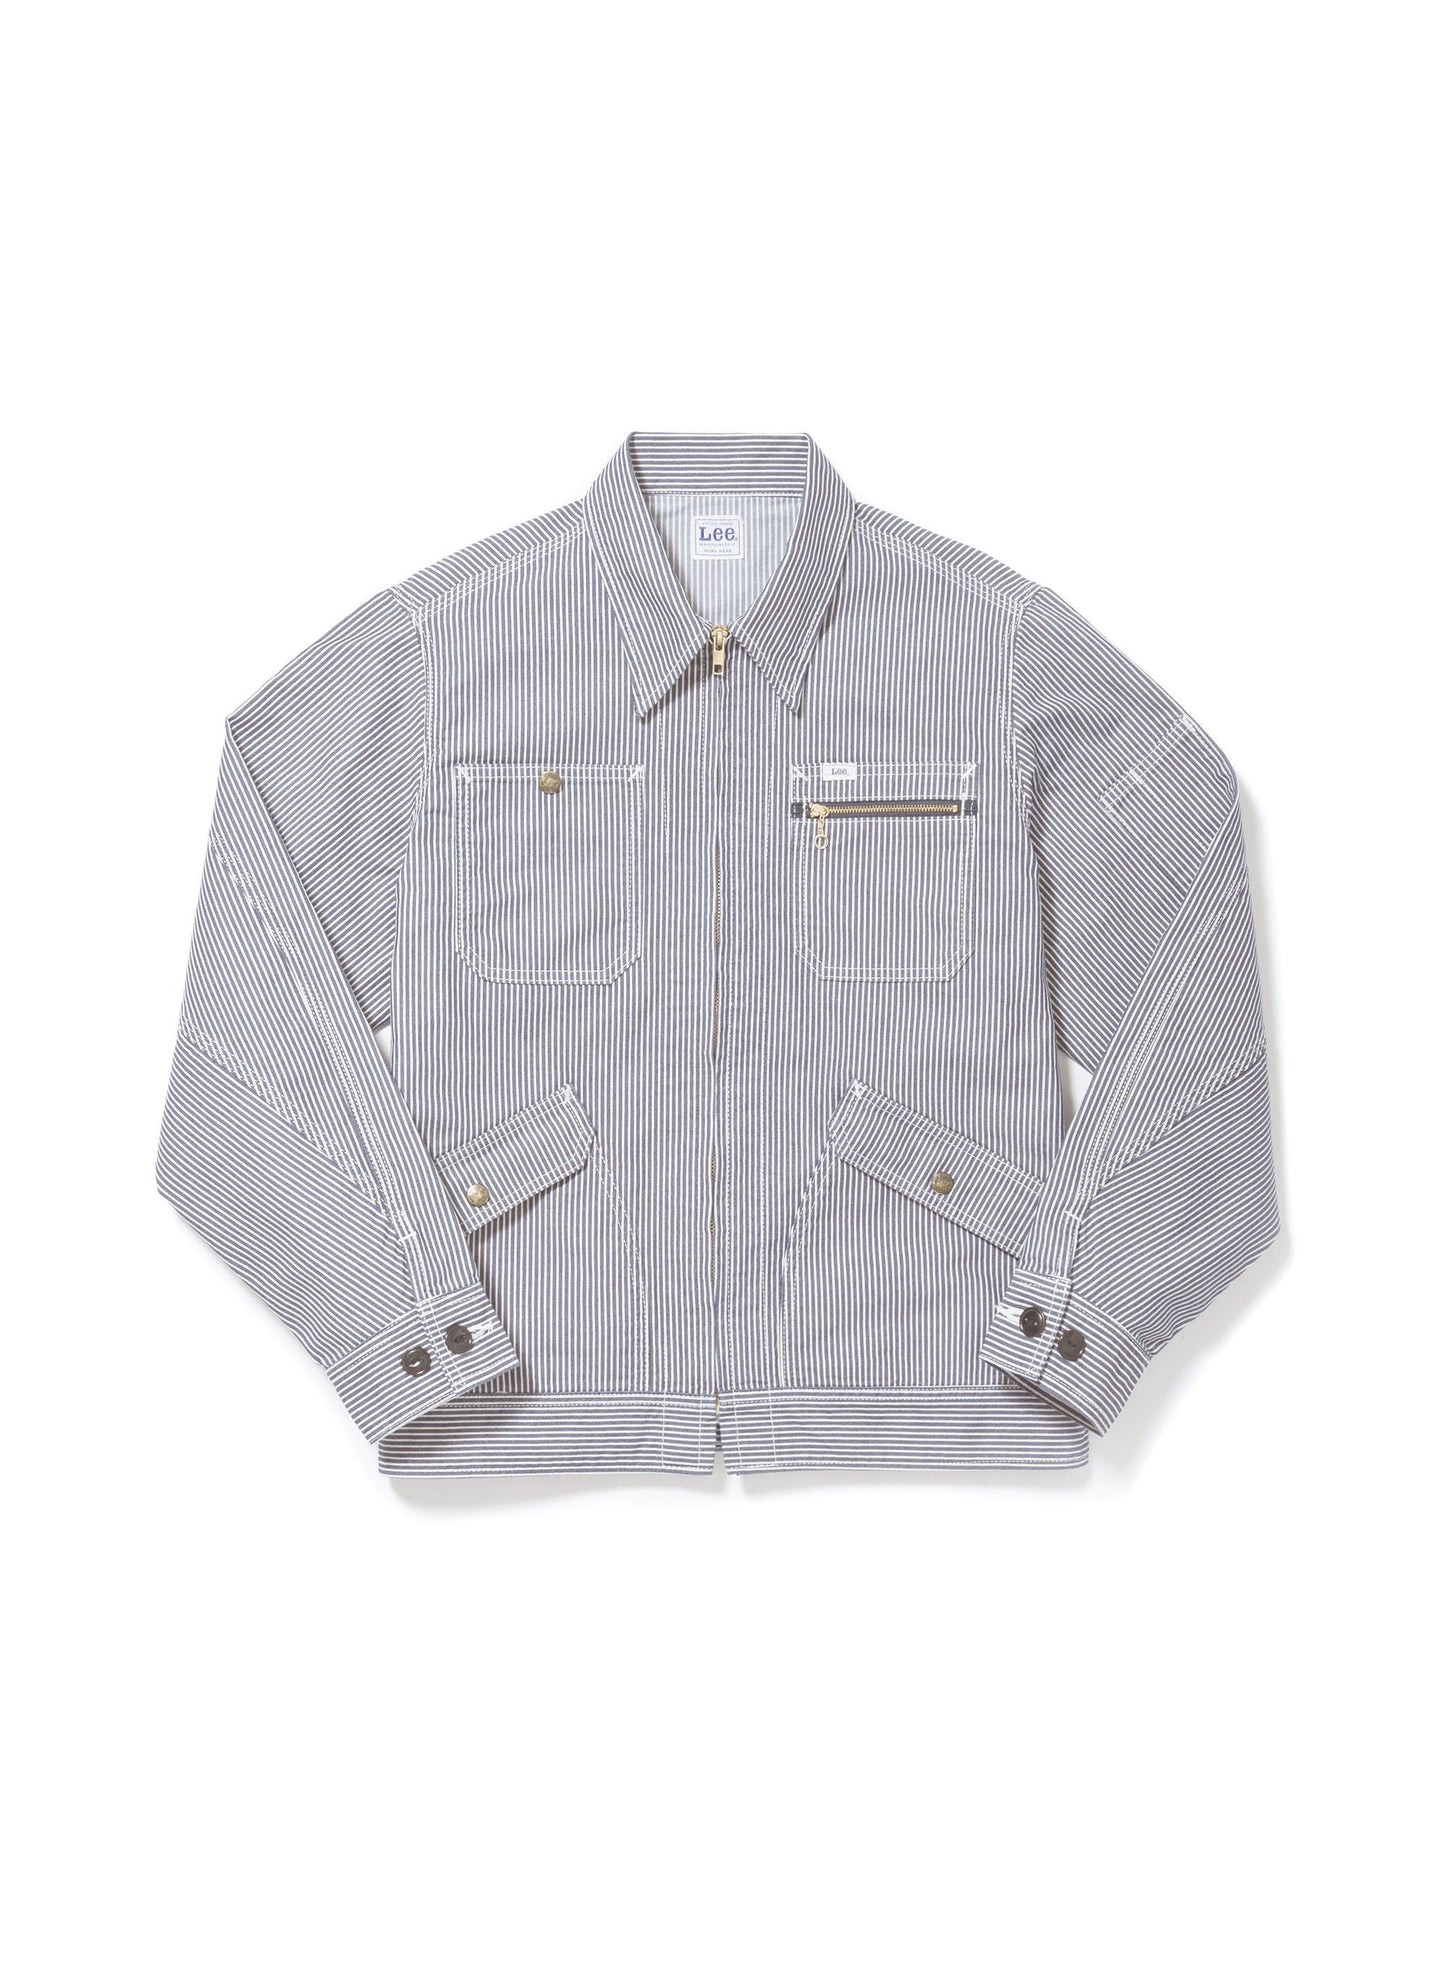 メンズジップアップジャケット | カフェ・飲食店制服 | 1枚 | LWB06001 | ホワイト×ブルー